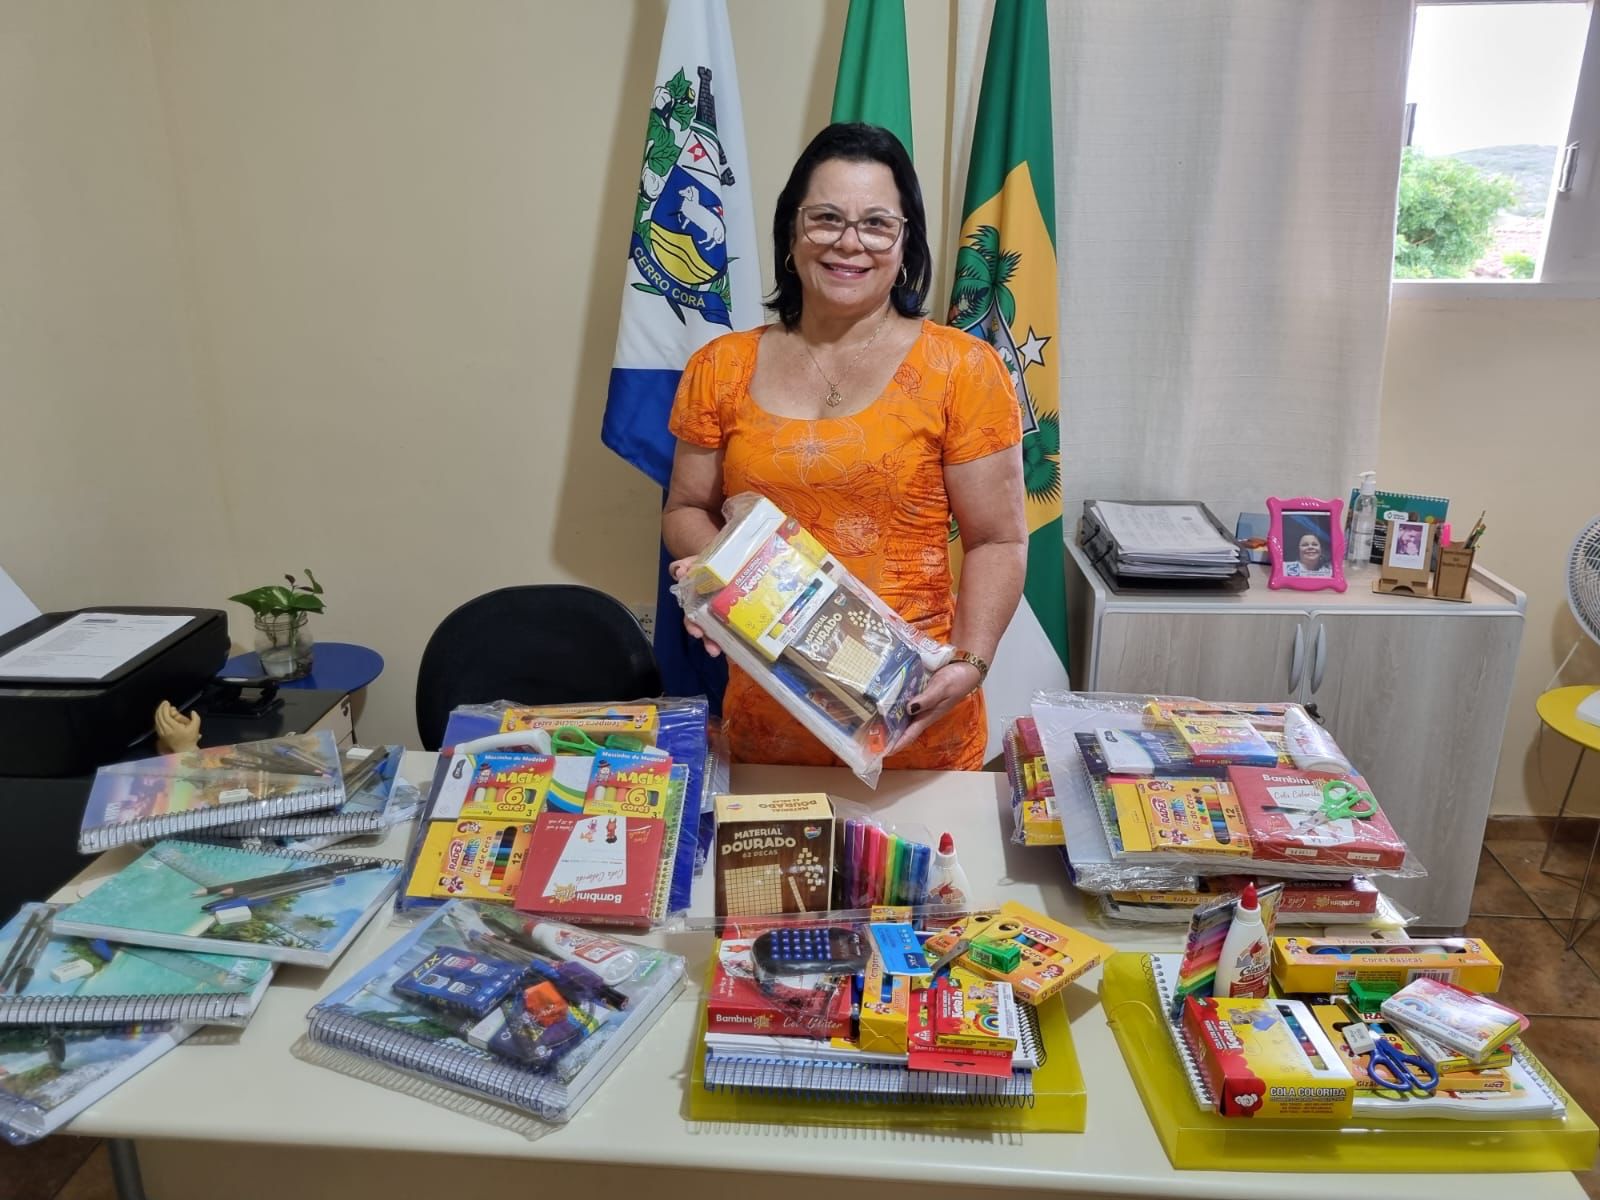 Prefeitura de Cerro Corá adquire kits escolares para alunos da rede municipal